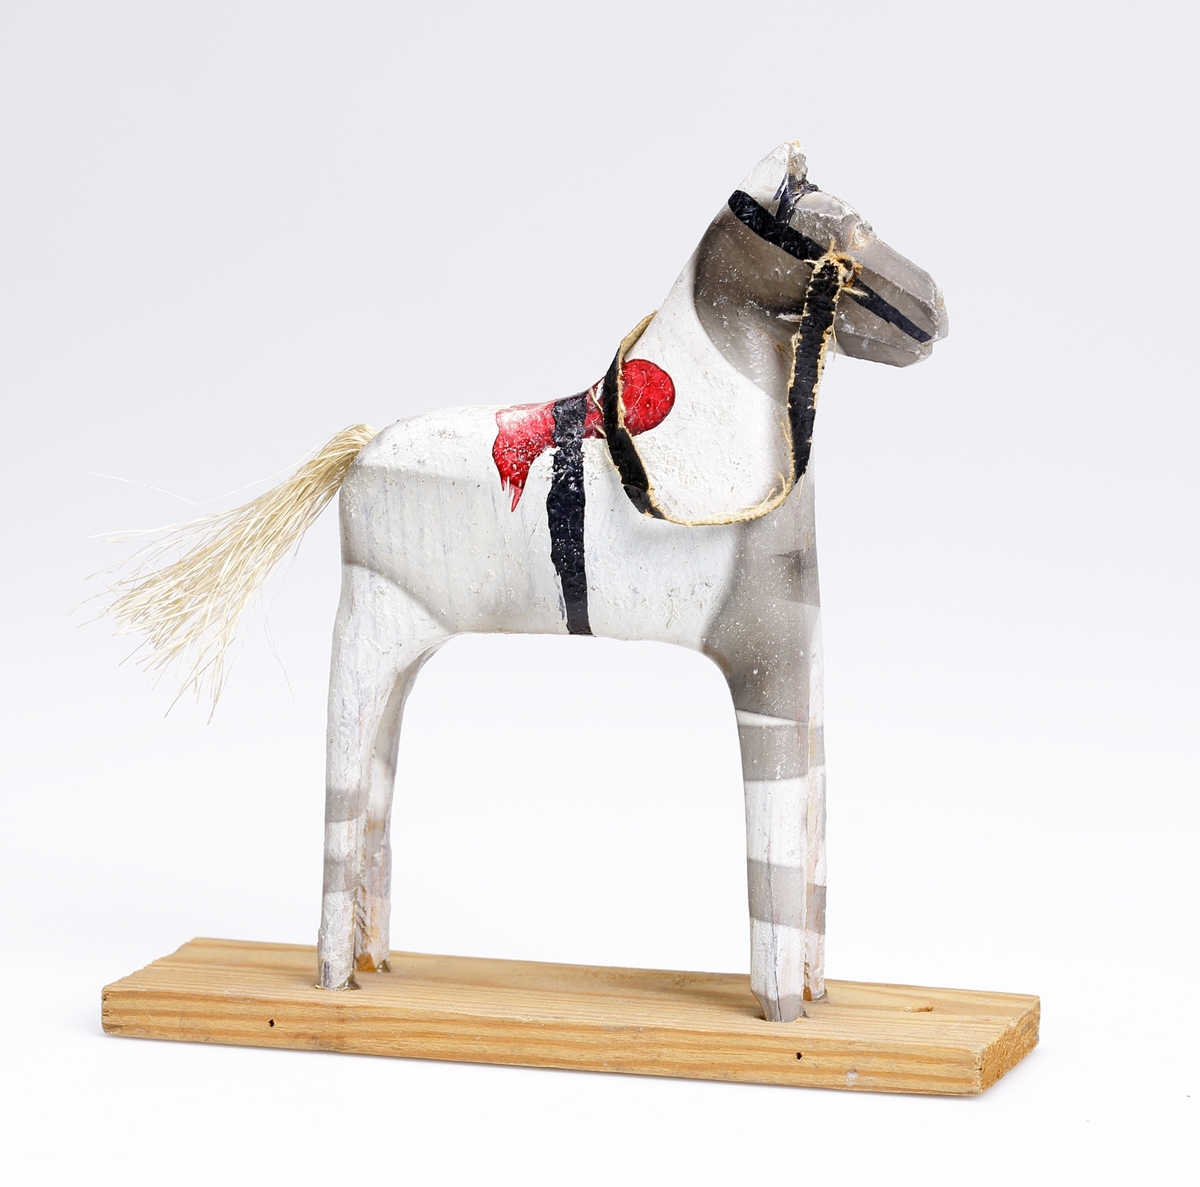 En snidad leksakshäst av trä och med en svans av tagel. Målad vit, grå, röd och svart.